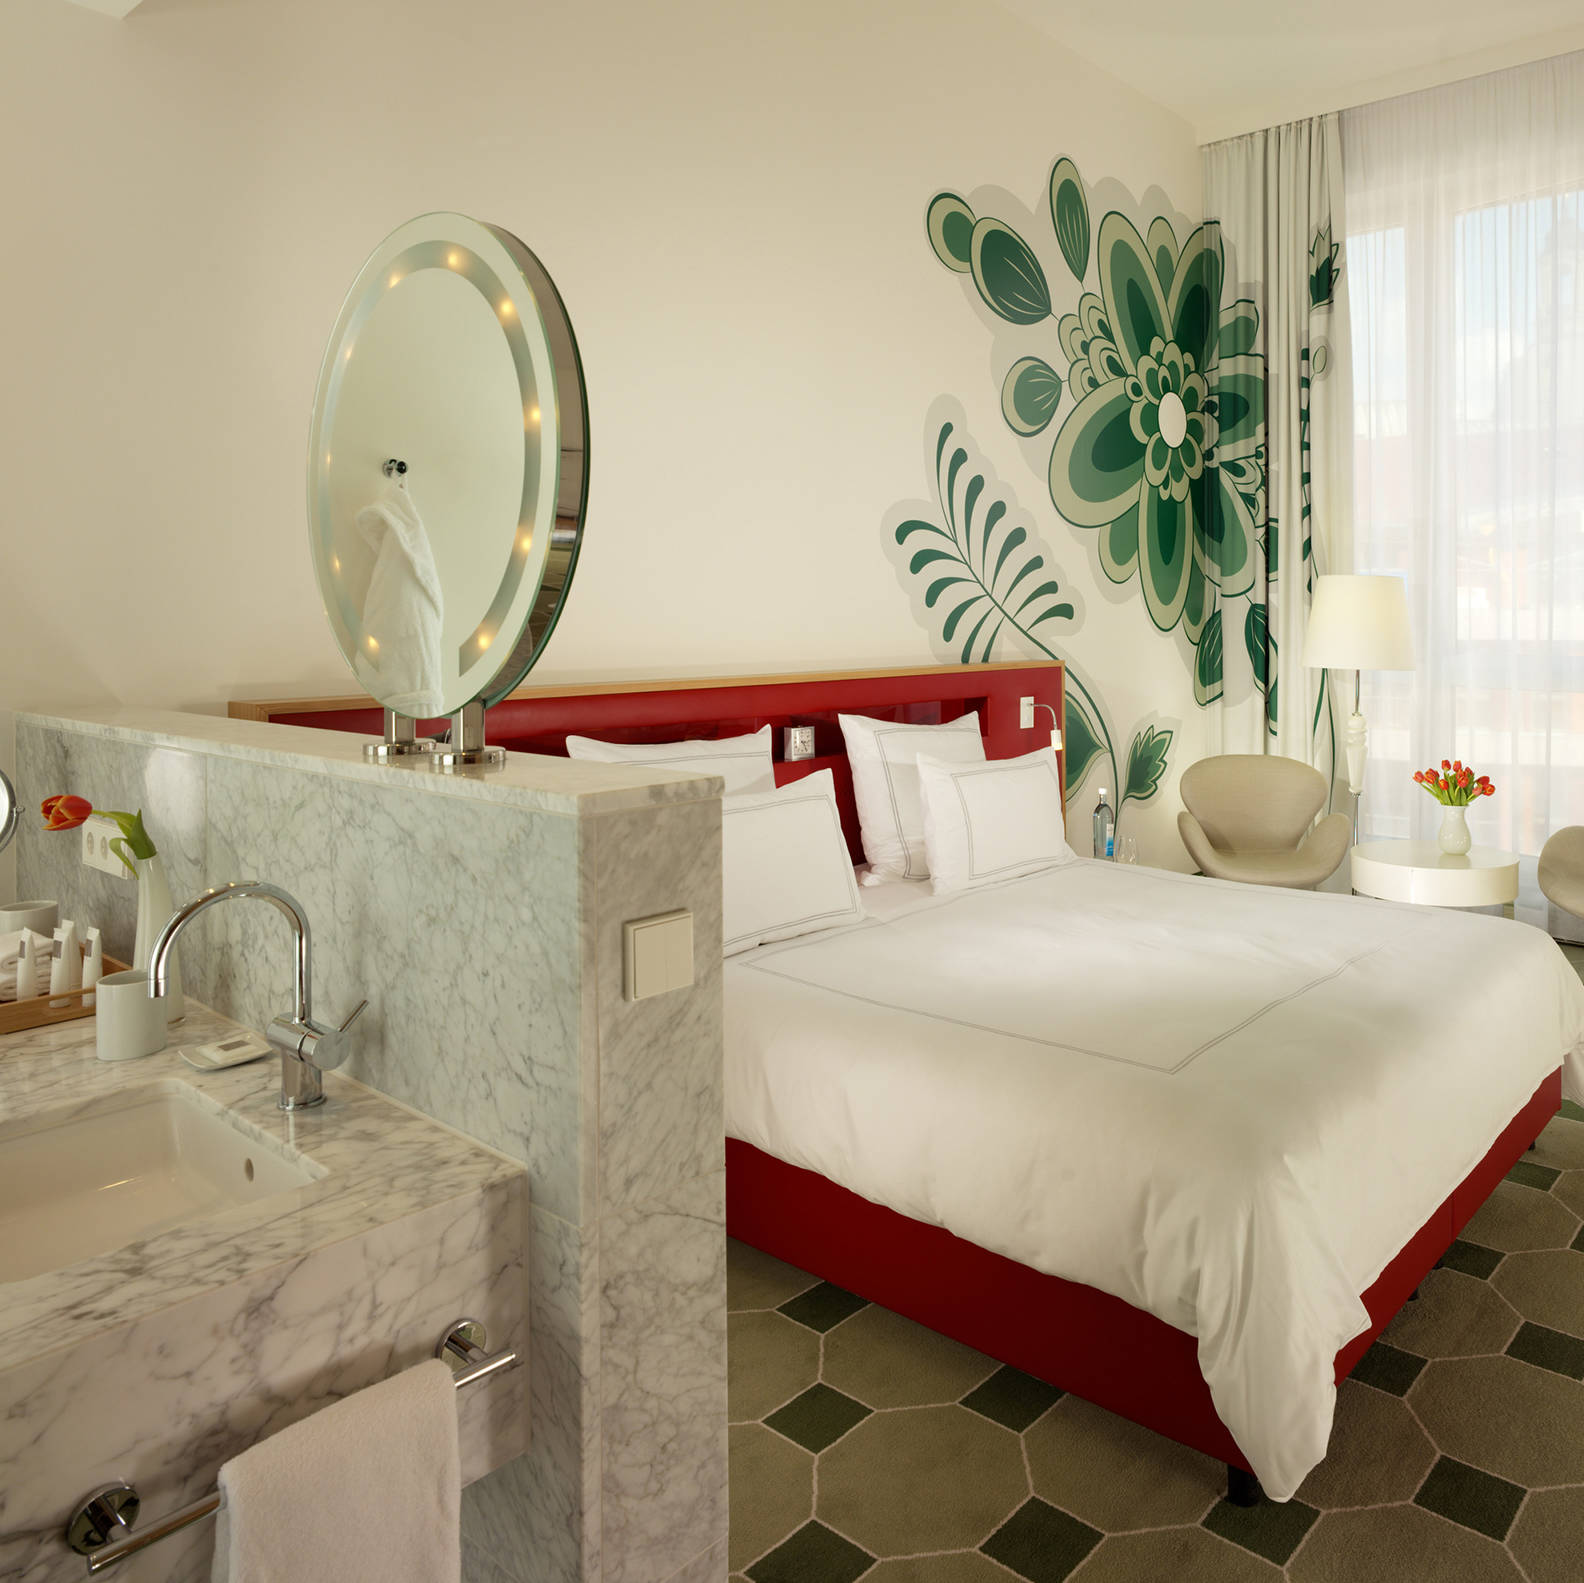 Best-price guarantee - Hyperion Hotel Dresden am Schloss - Official website